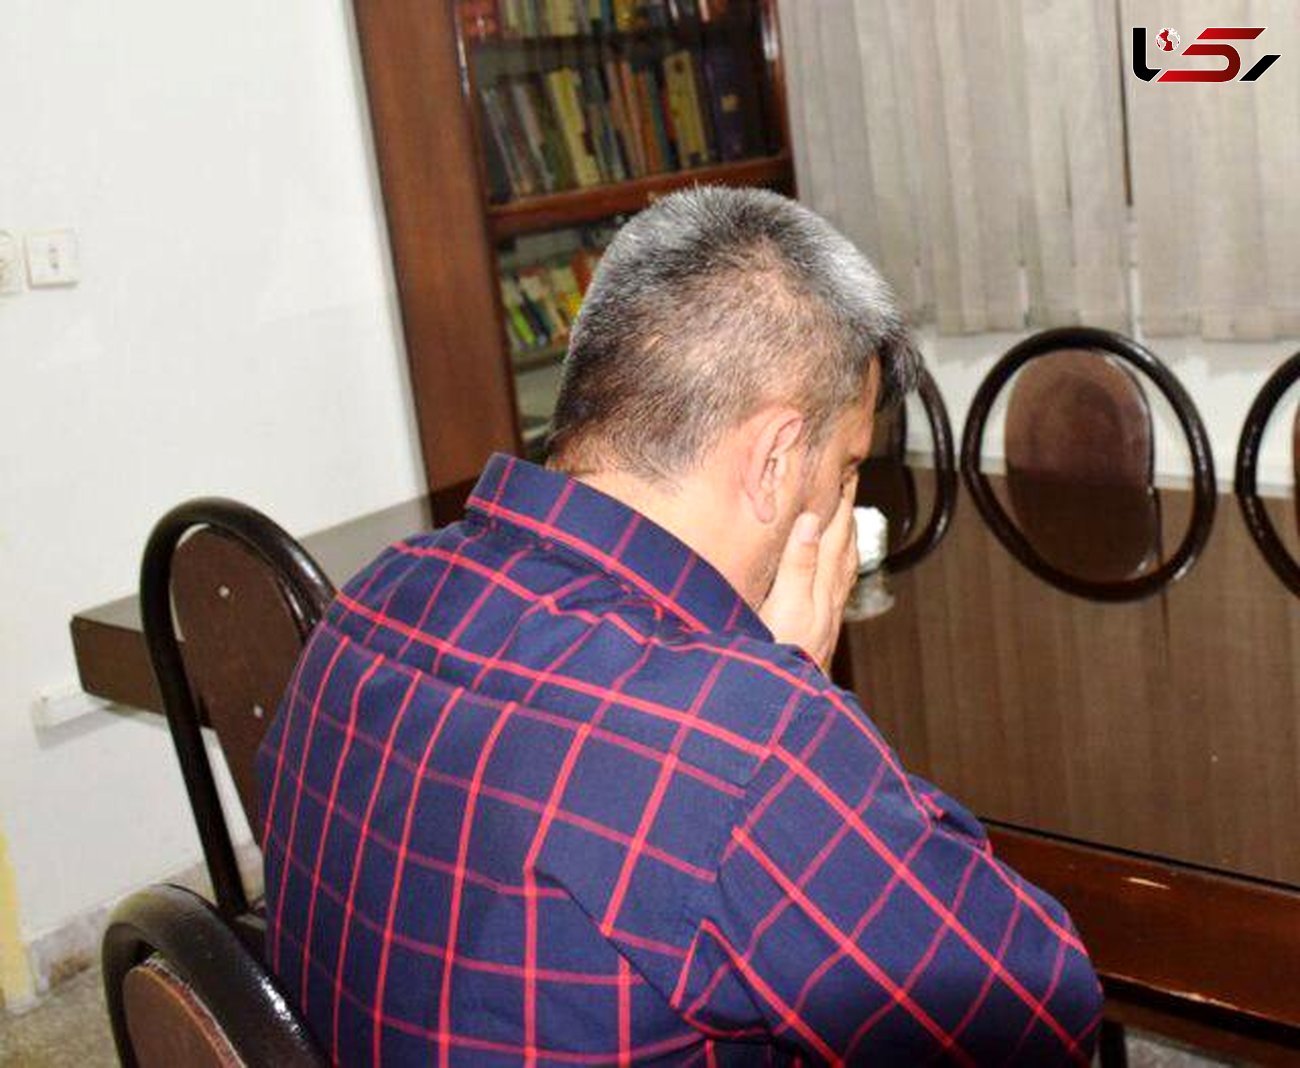 مرد کرجی در آخرین لحظات از اعدام نجات یافت+تصویر اشک قاتل